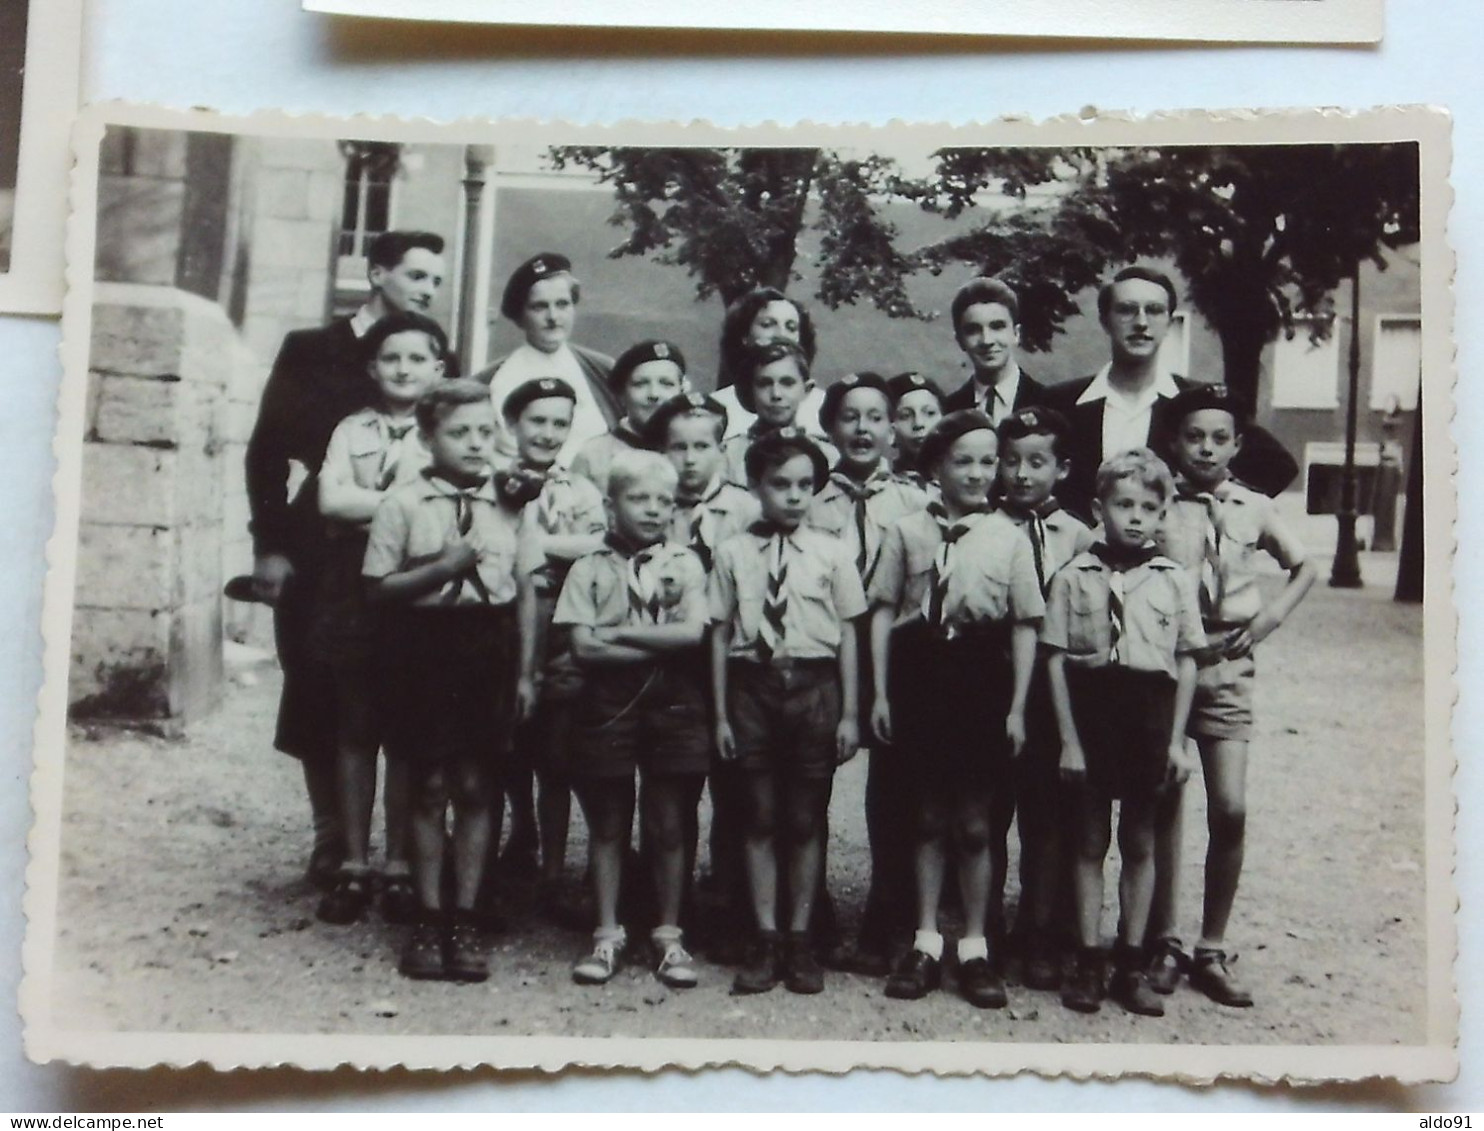 (Scoutisme - Photos anciennes...) - Lot de 7 documents photo. Fête et Camp  "Groupe Coeur Vaillant Charles Foucault"